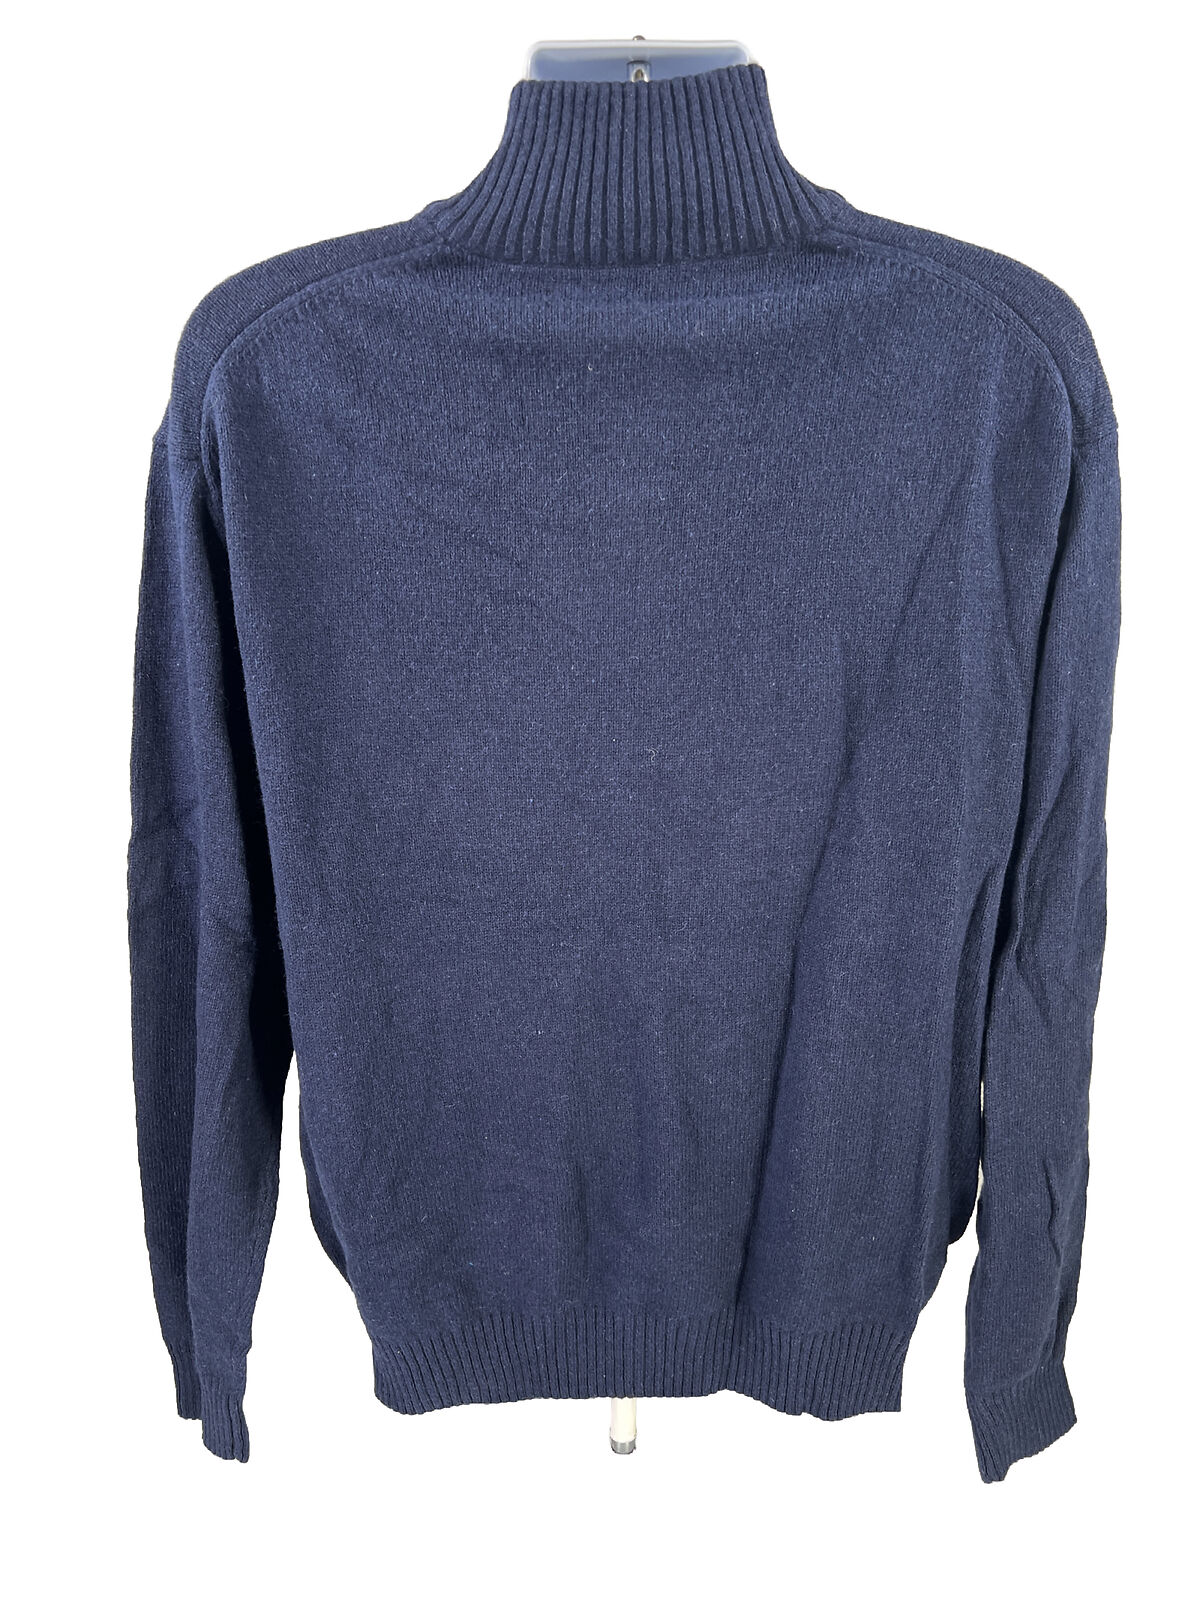 NUEVO Suéter de mezcla de lana con cuello chal azul marino de Perry Ellis para hombre - XL